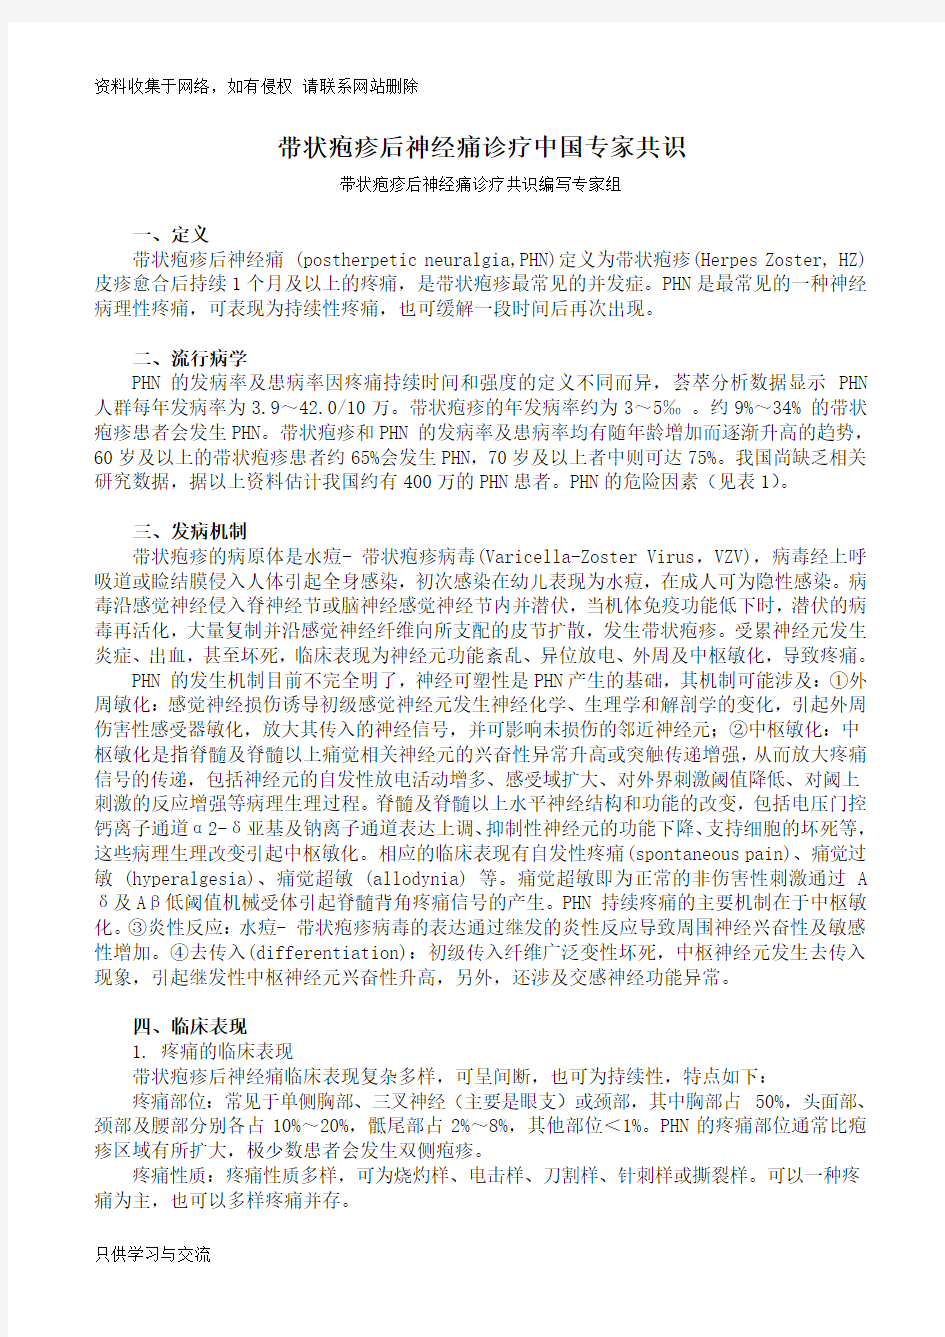 带状疱疹后神经痛诊疗中国专家共识(pdf版)